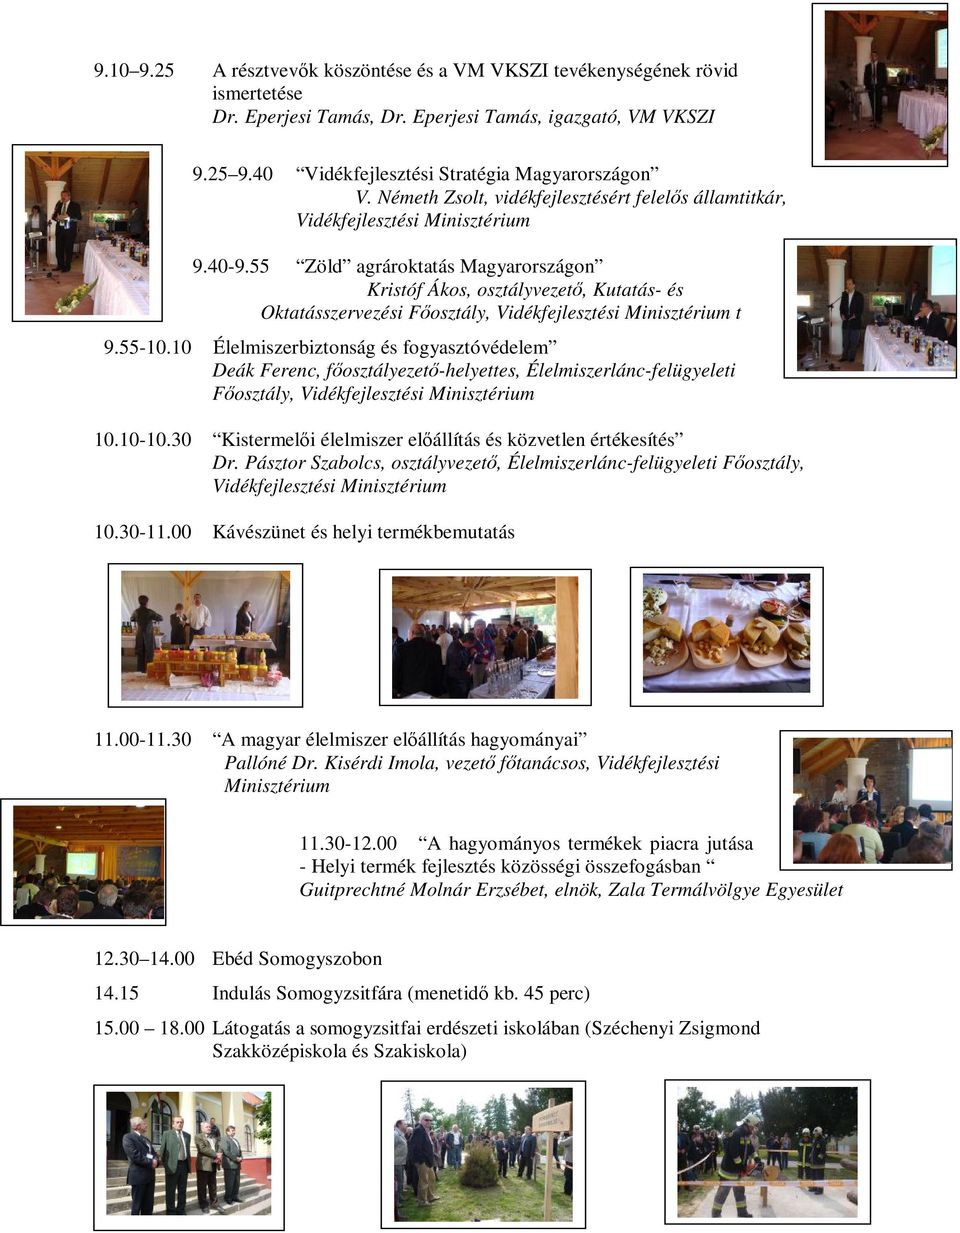 55 Zöld agrároktatás Magyarországon Kristóf Ákos, osztályvezető, Kutatás- és Oktatásszervezési Főosztály, Vidékfejlesztési Minisztérium t 9.55-10.